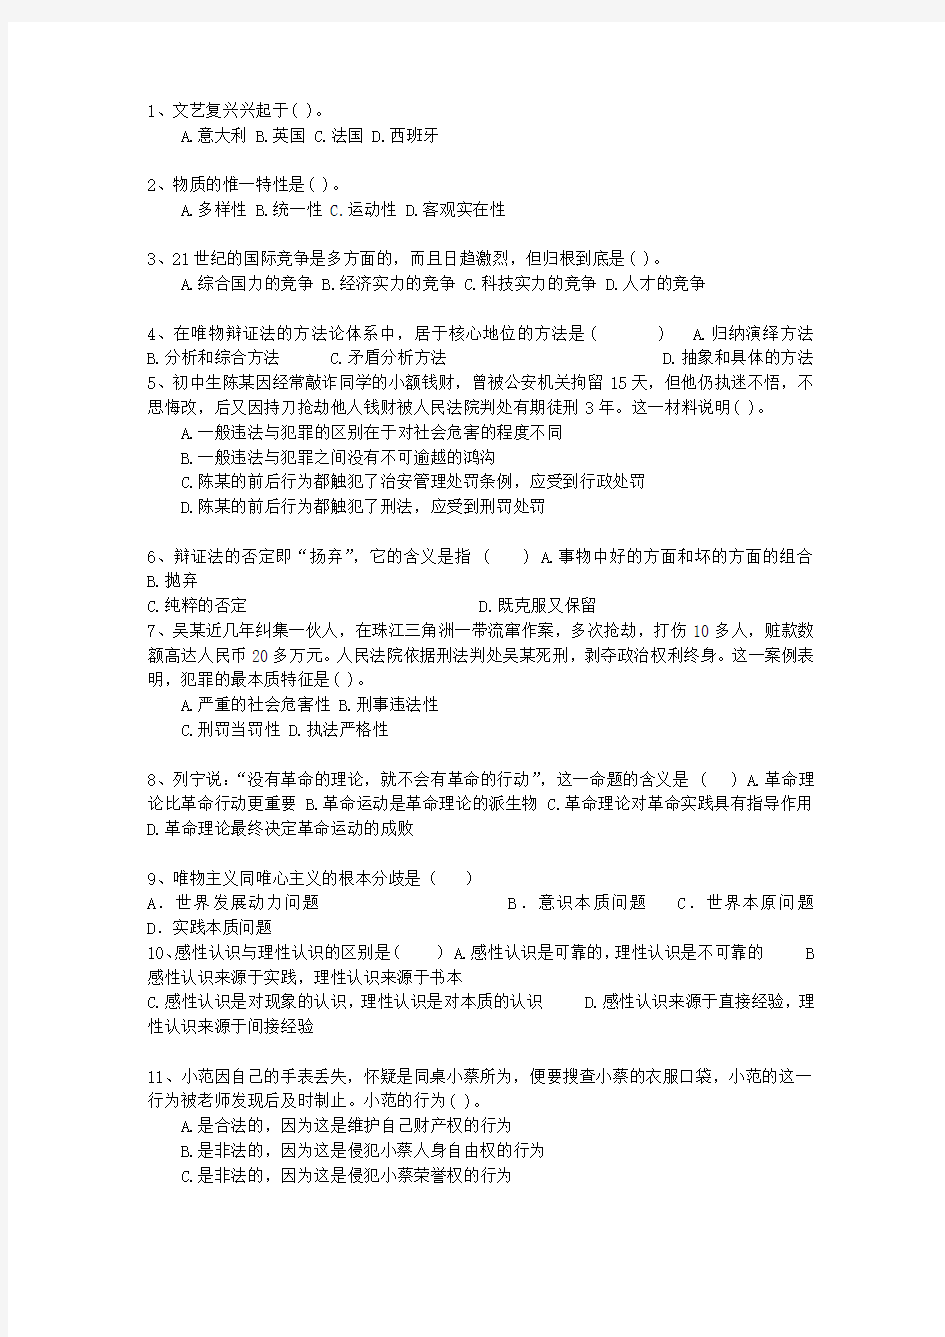 2013广西壮族自治区直属事业单位考试公共基础知识最新考试试题库